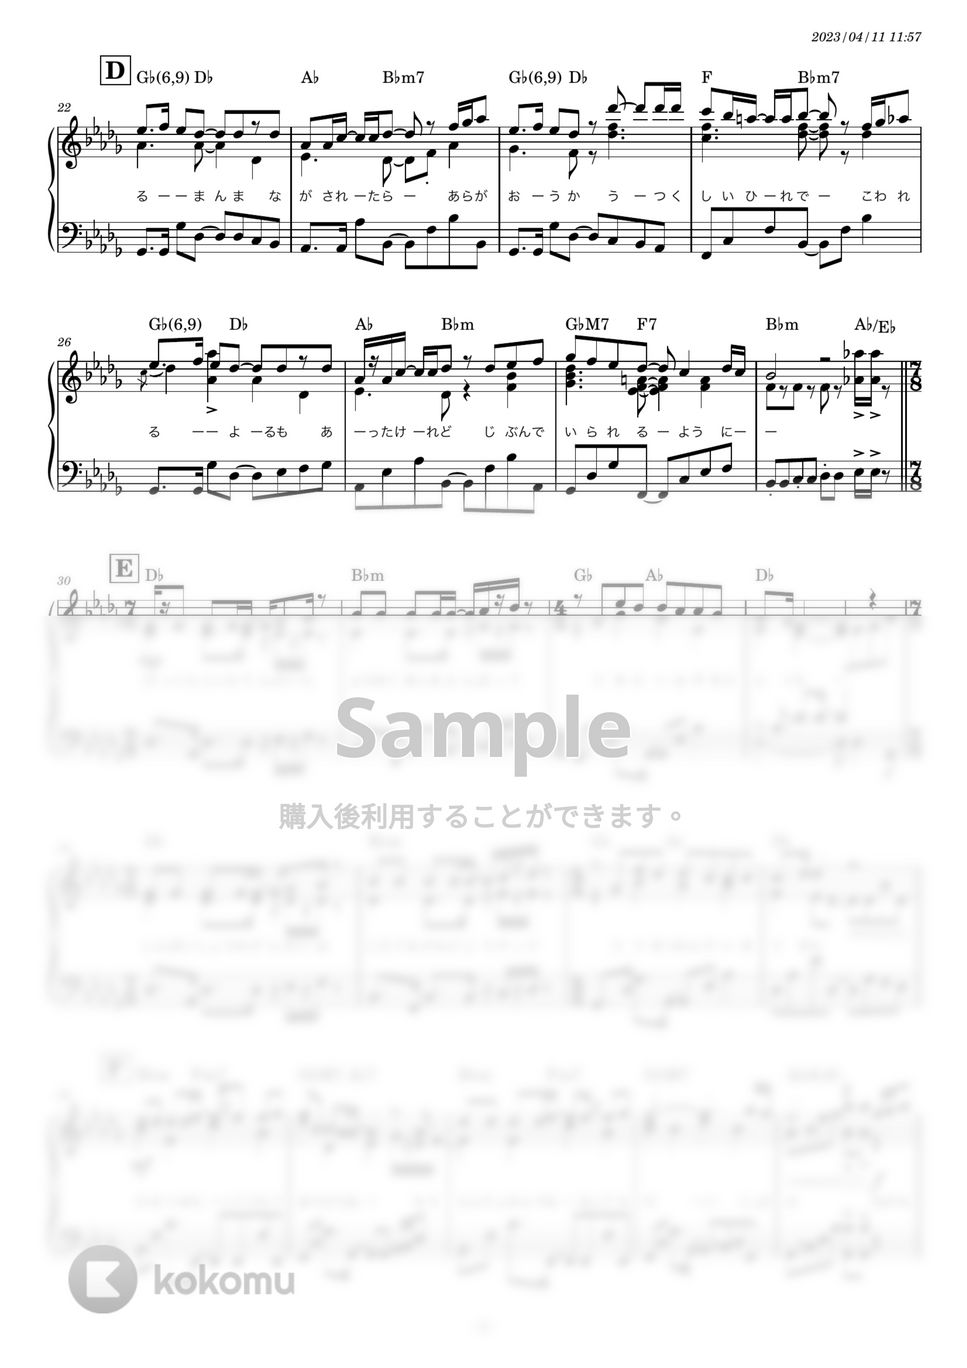 スピッツ - 美しい鰭 (ピアノソロ) by 糸川瑞樹